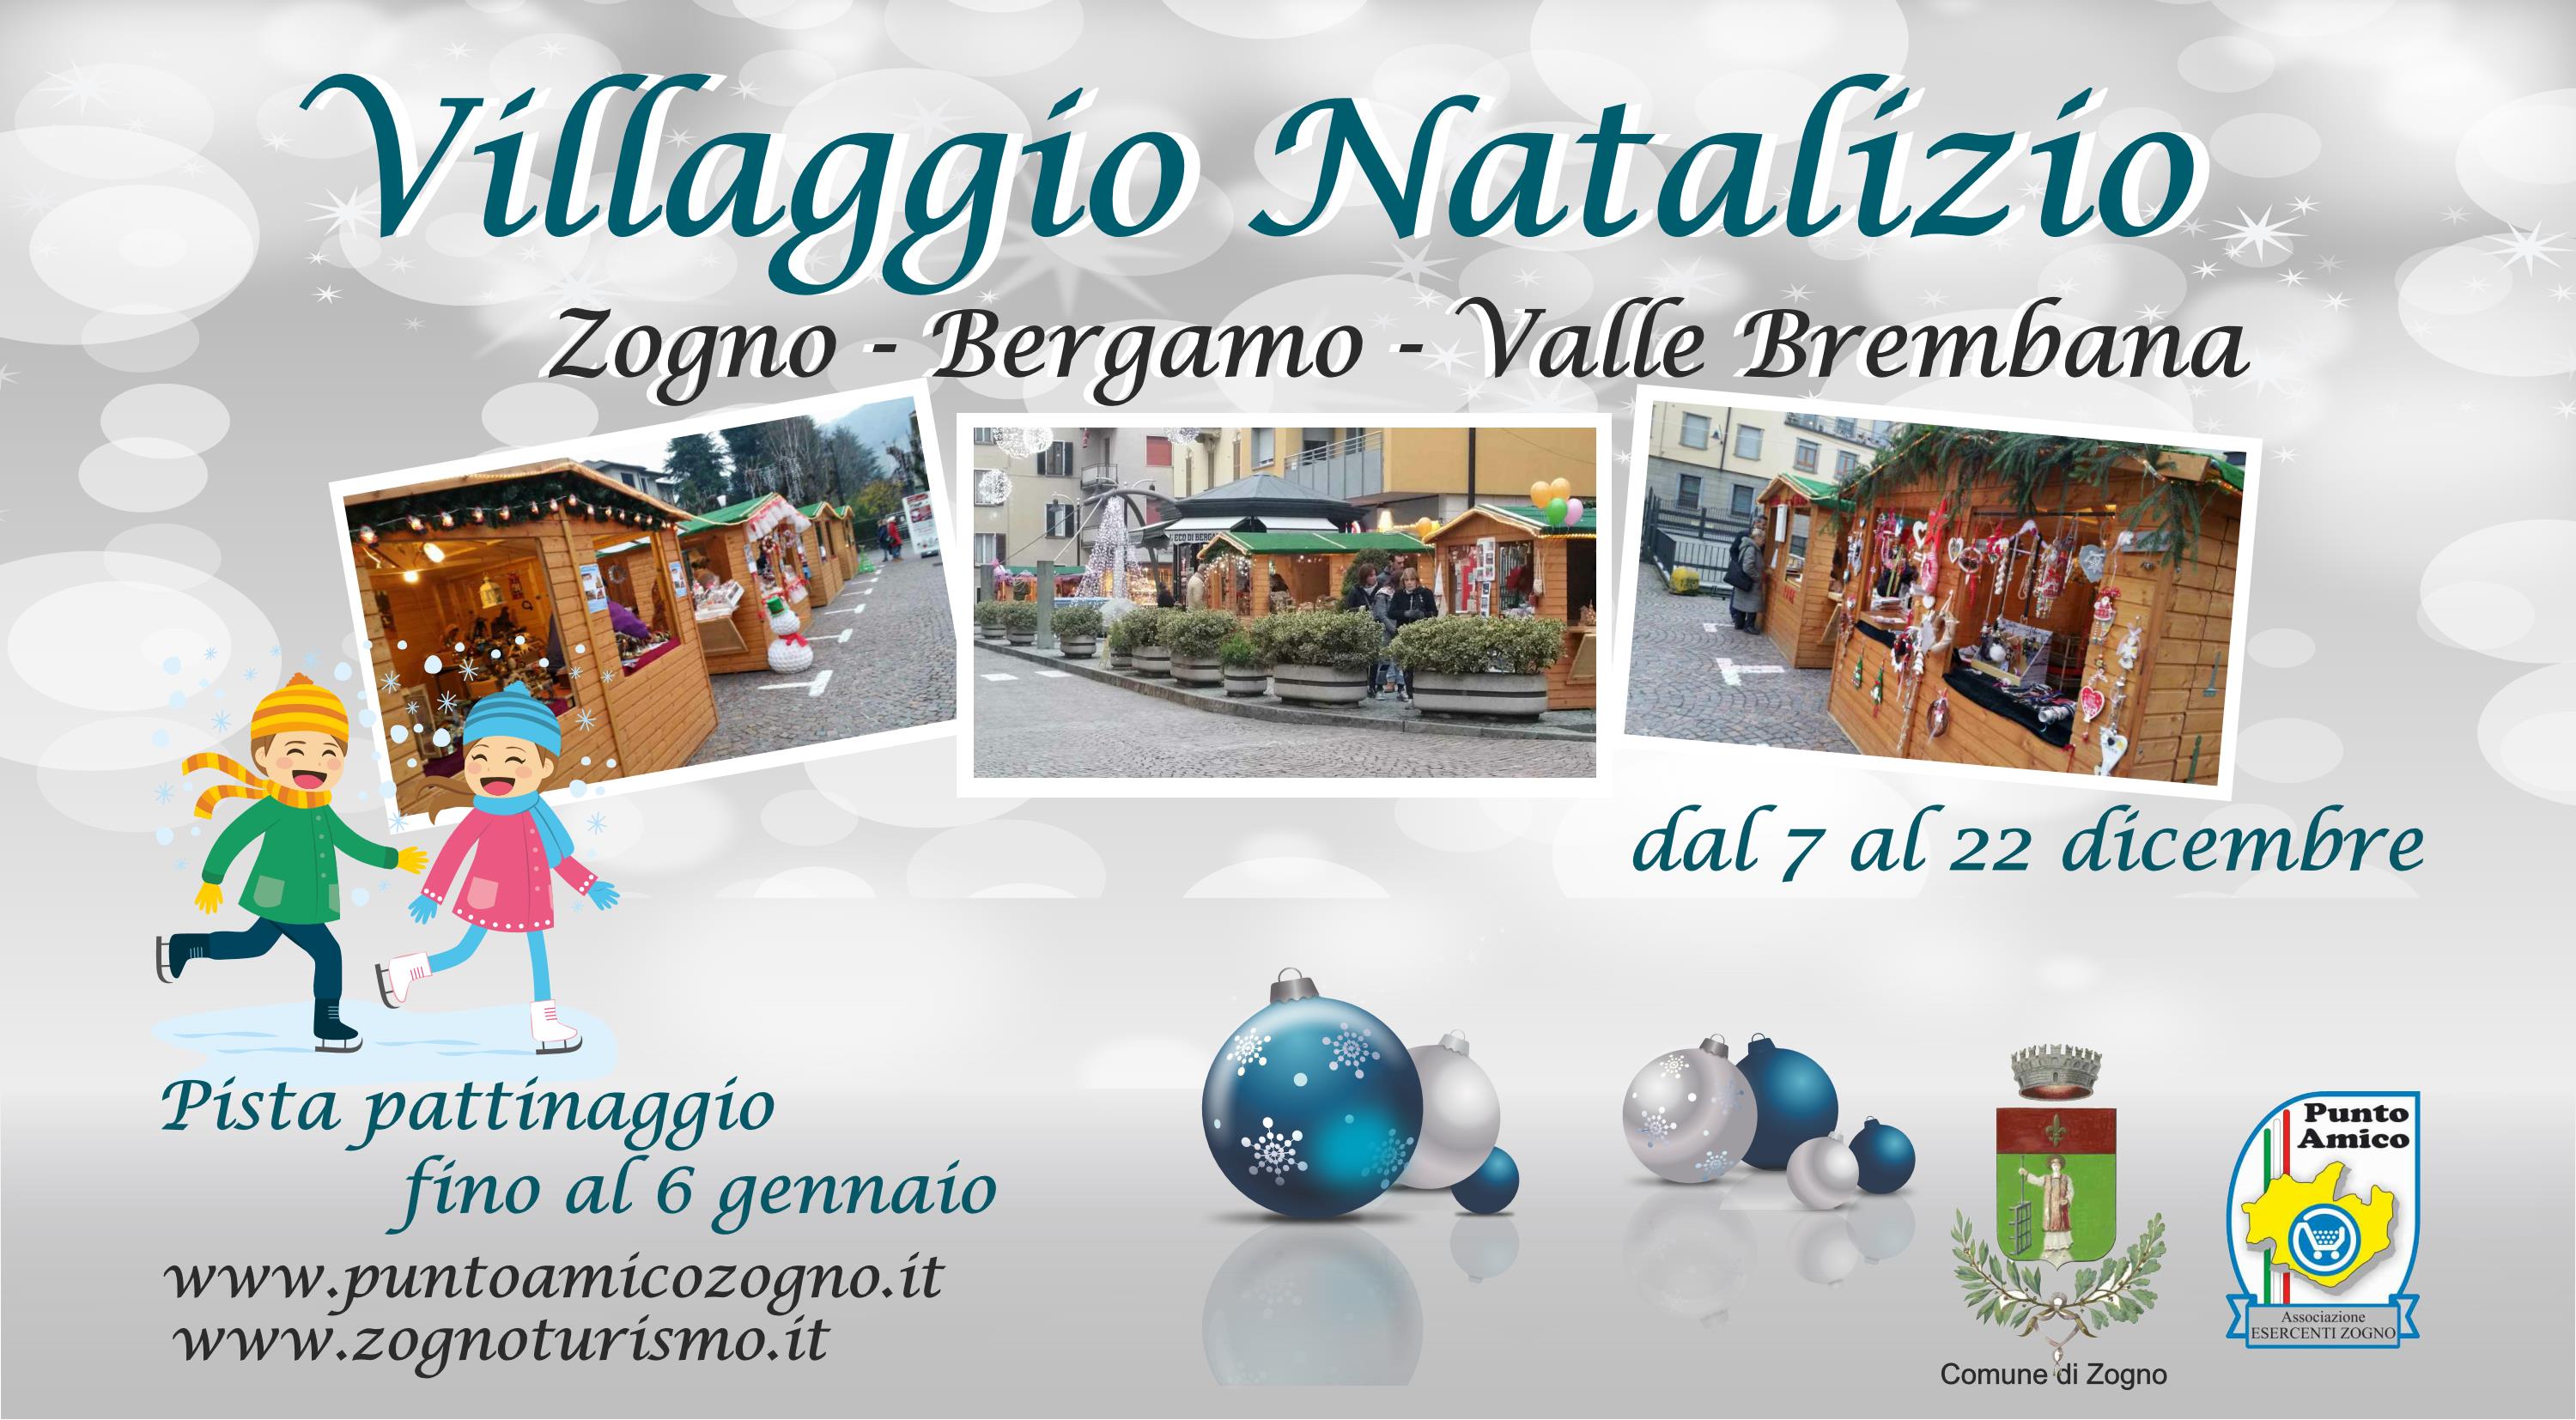  Villaggio Natalizio dal 7 al 22 dicembre